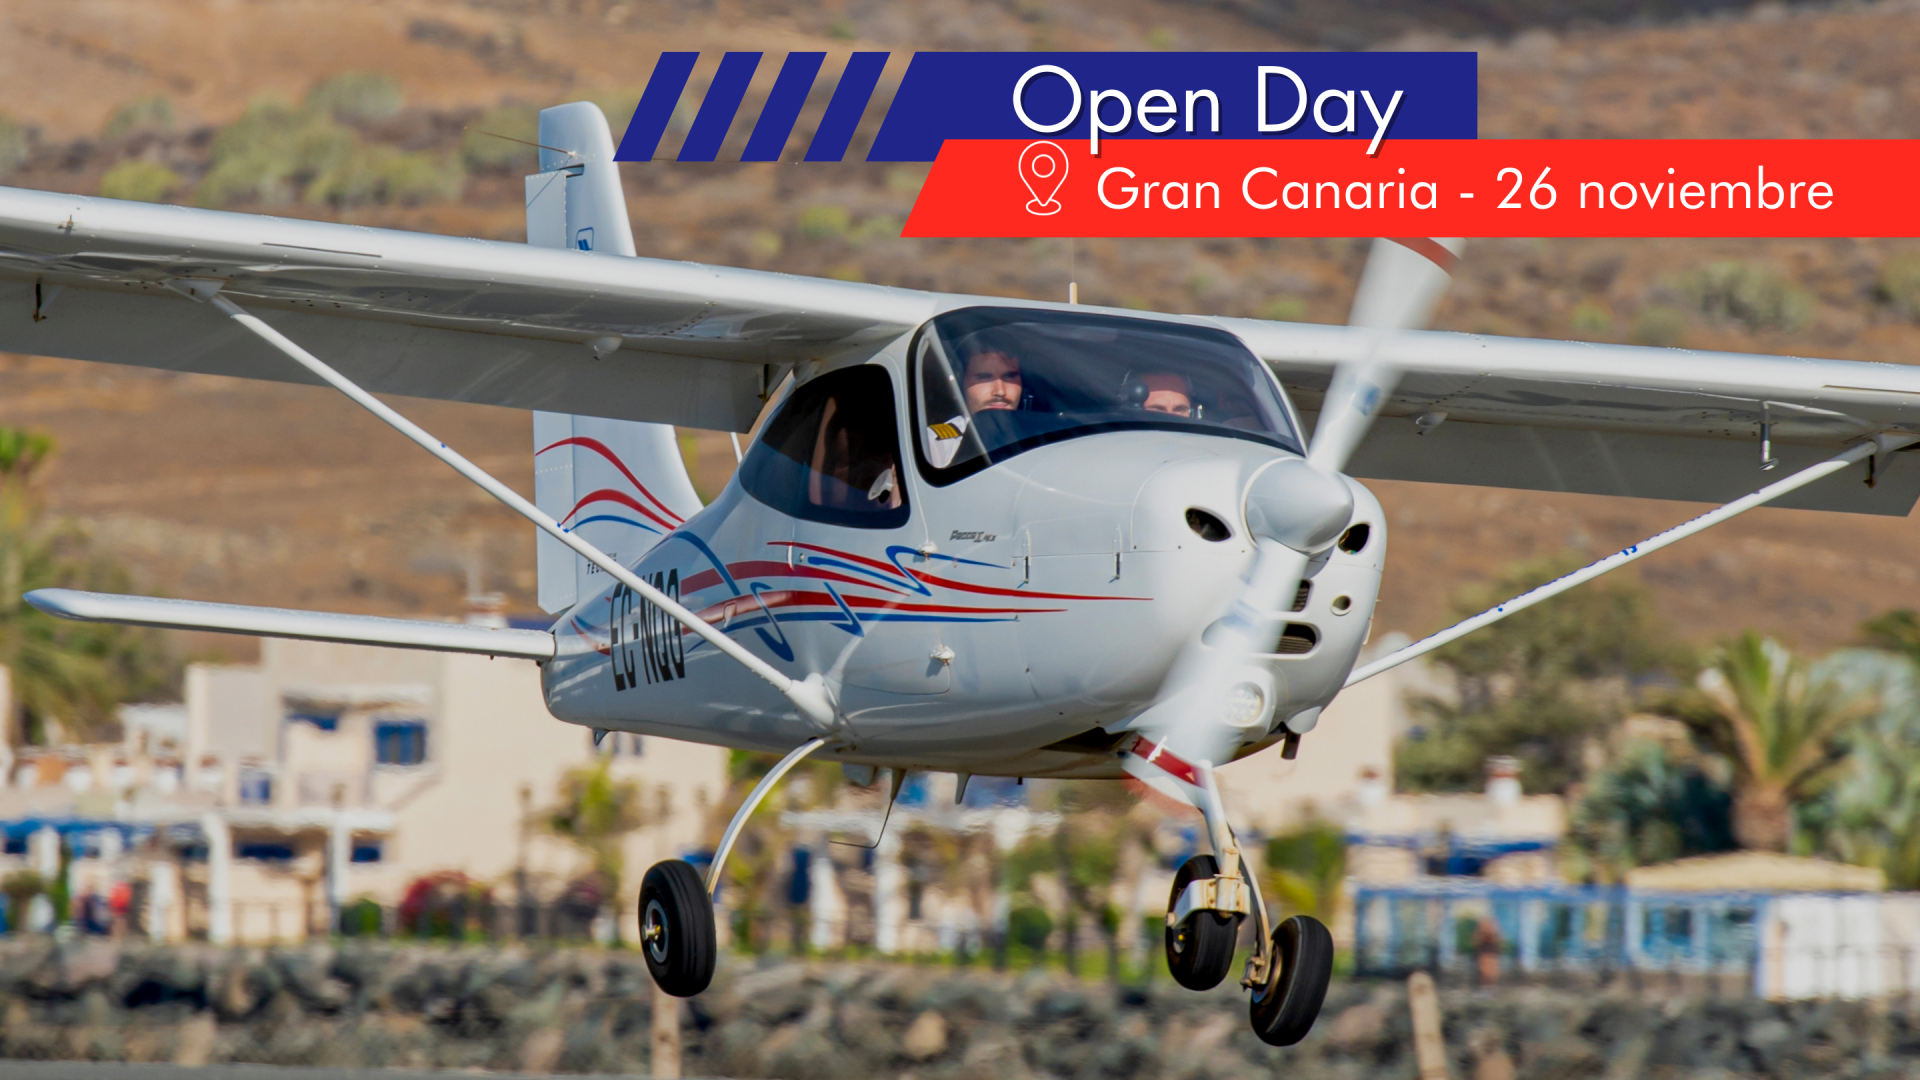 Nuevo Open Day en Gran Canaria - 26 noviembre